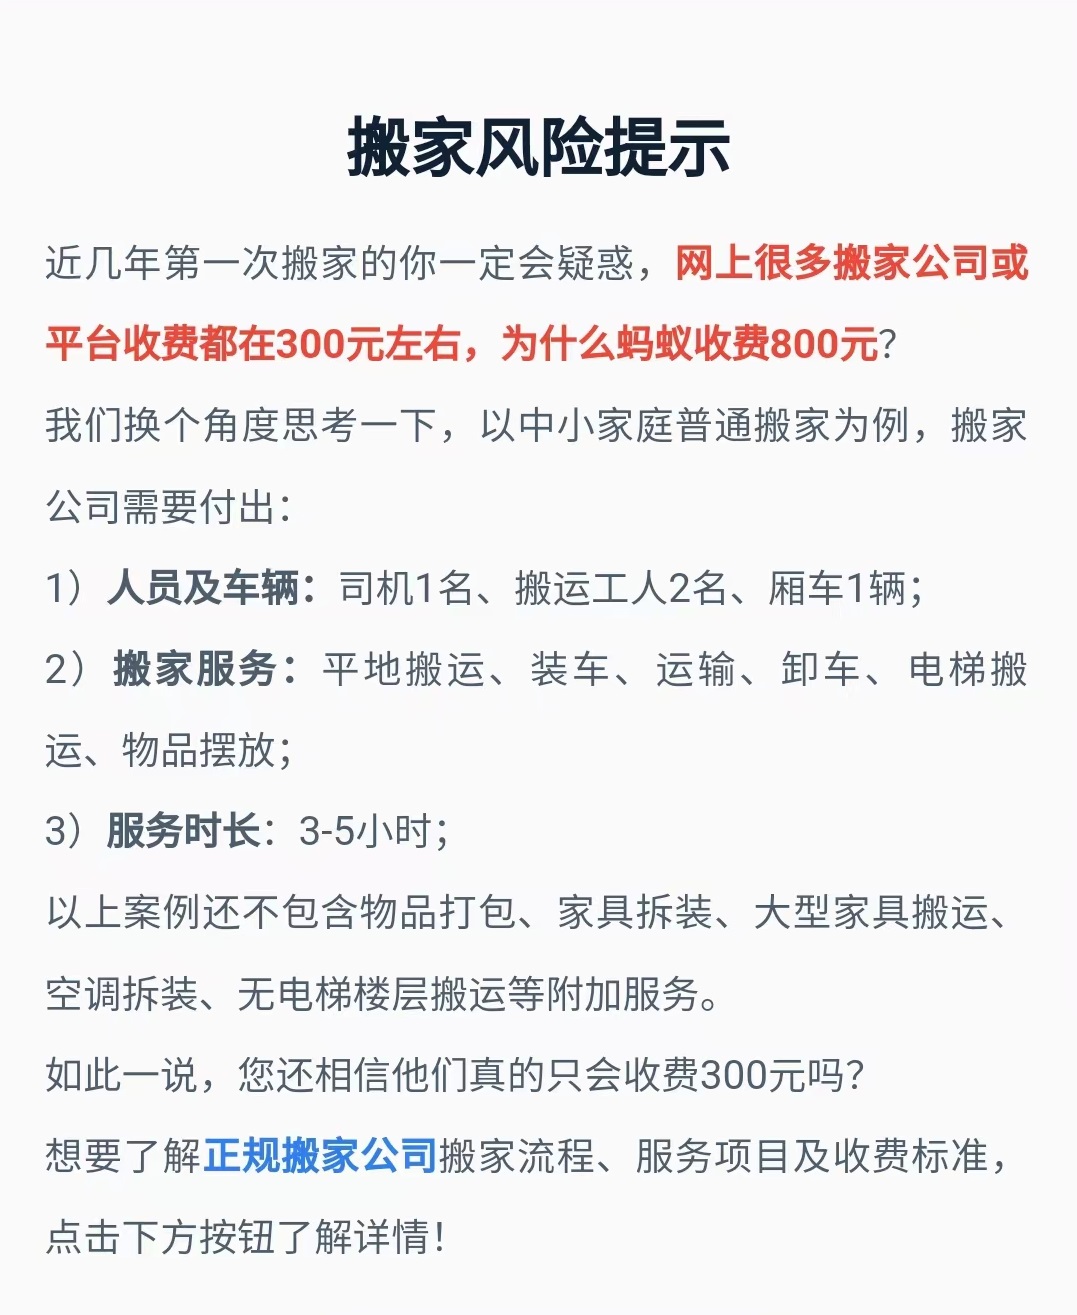 上海家易是骗子公司吗_上海公兴搬场电话_上海的搬场公司有多少家